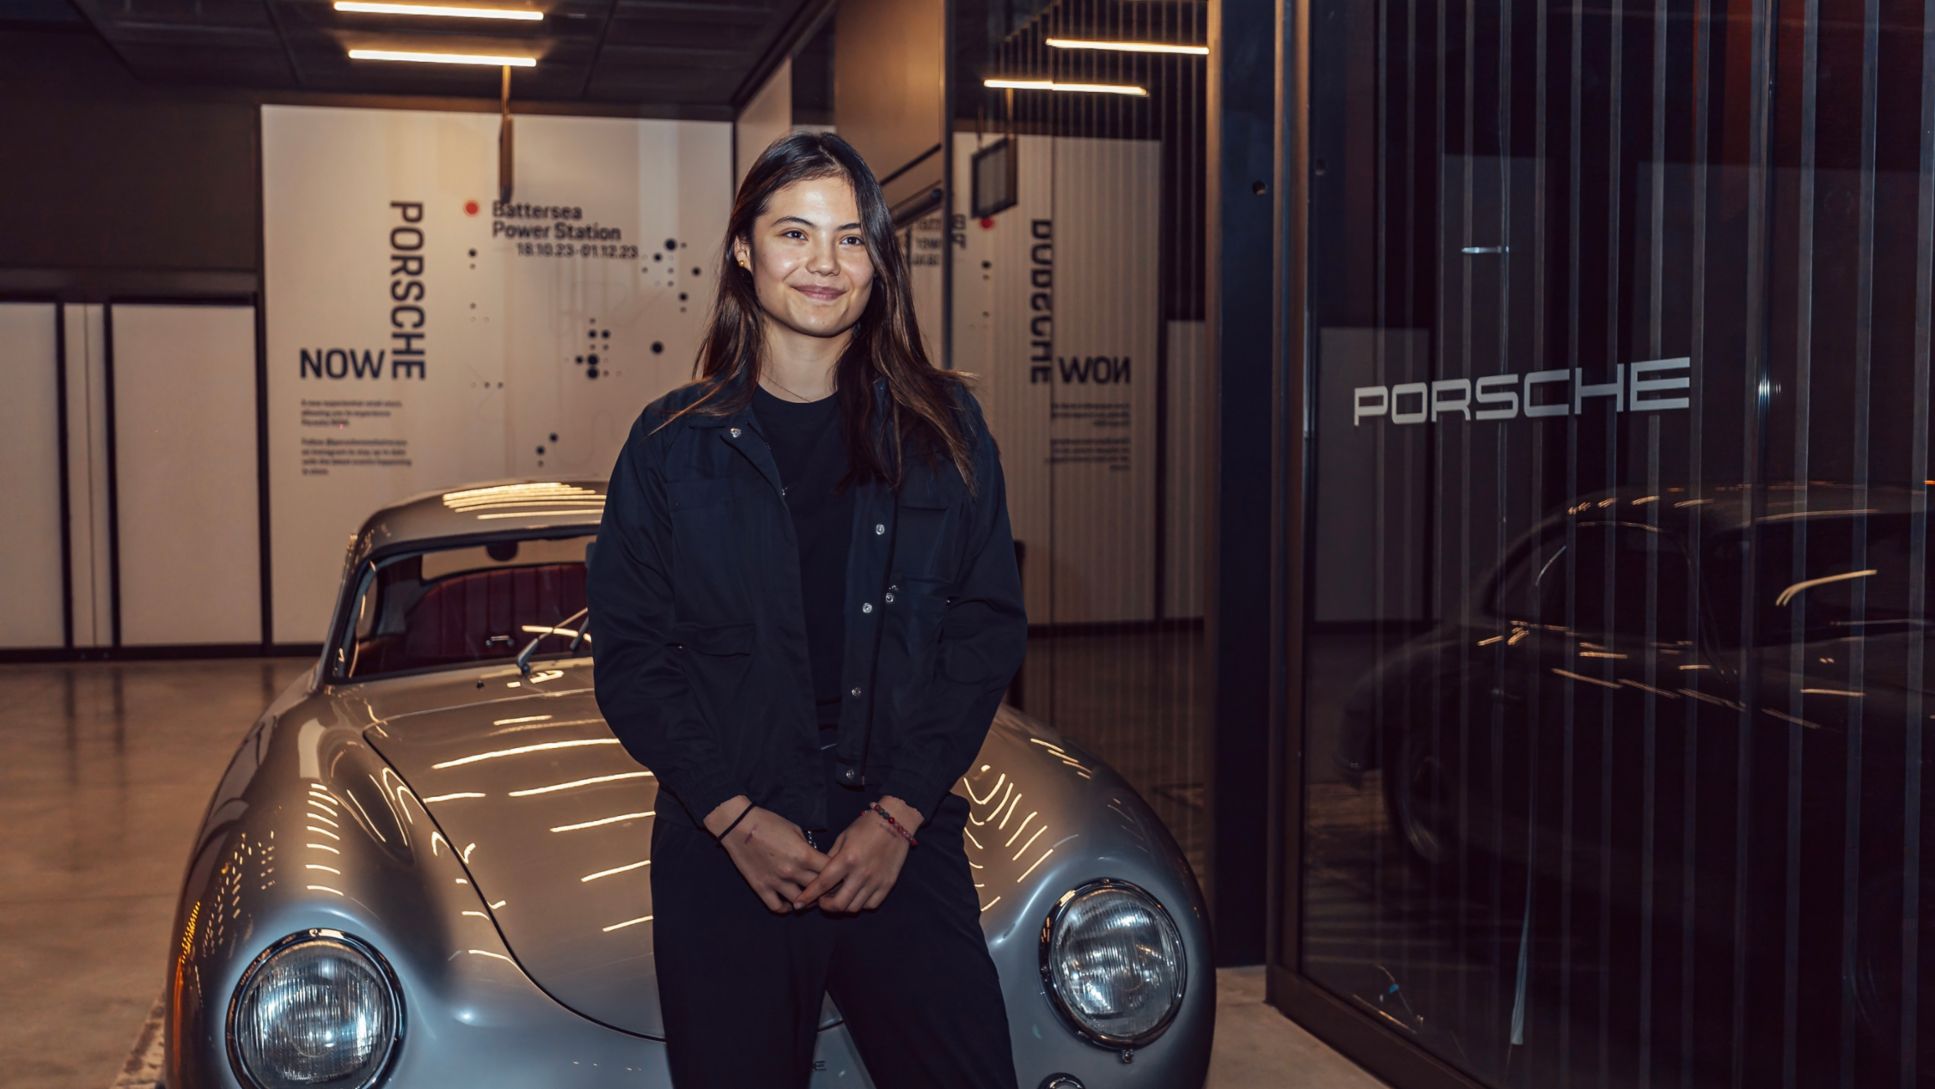 Porsche-Markenbotschafterin Emma Raducanu, Porsche NOW Brand Store, London, 2023, Porsche AG